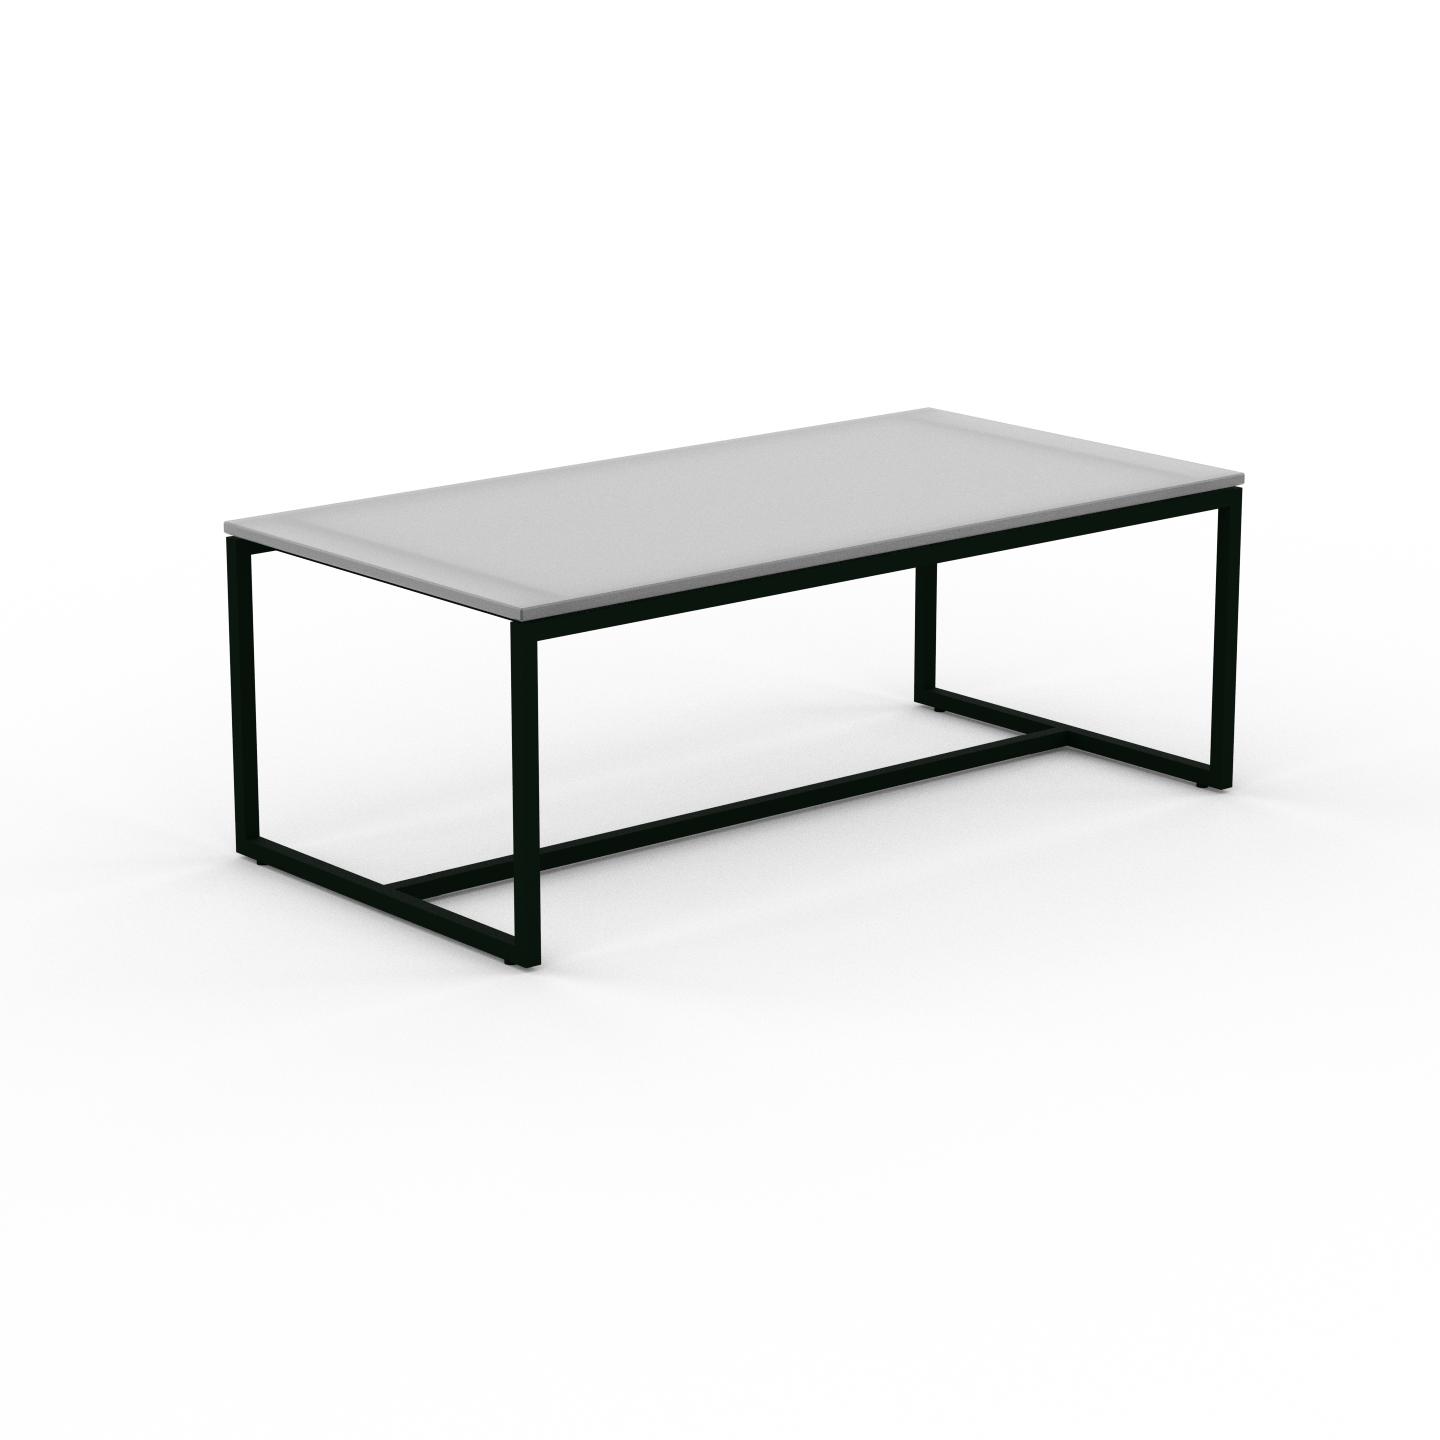 MYCS Beistelltisch Kristallglas satiniert - Eleganter Nachttisch: Hochwertige Materialien, einzigartiges Design - 81 x 31 x 42 cm, Komplett anpassbar